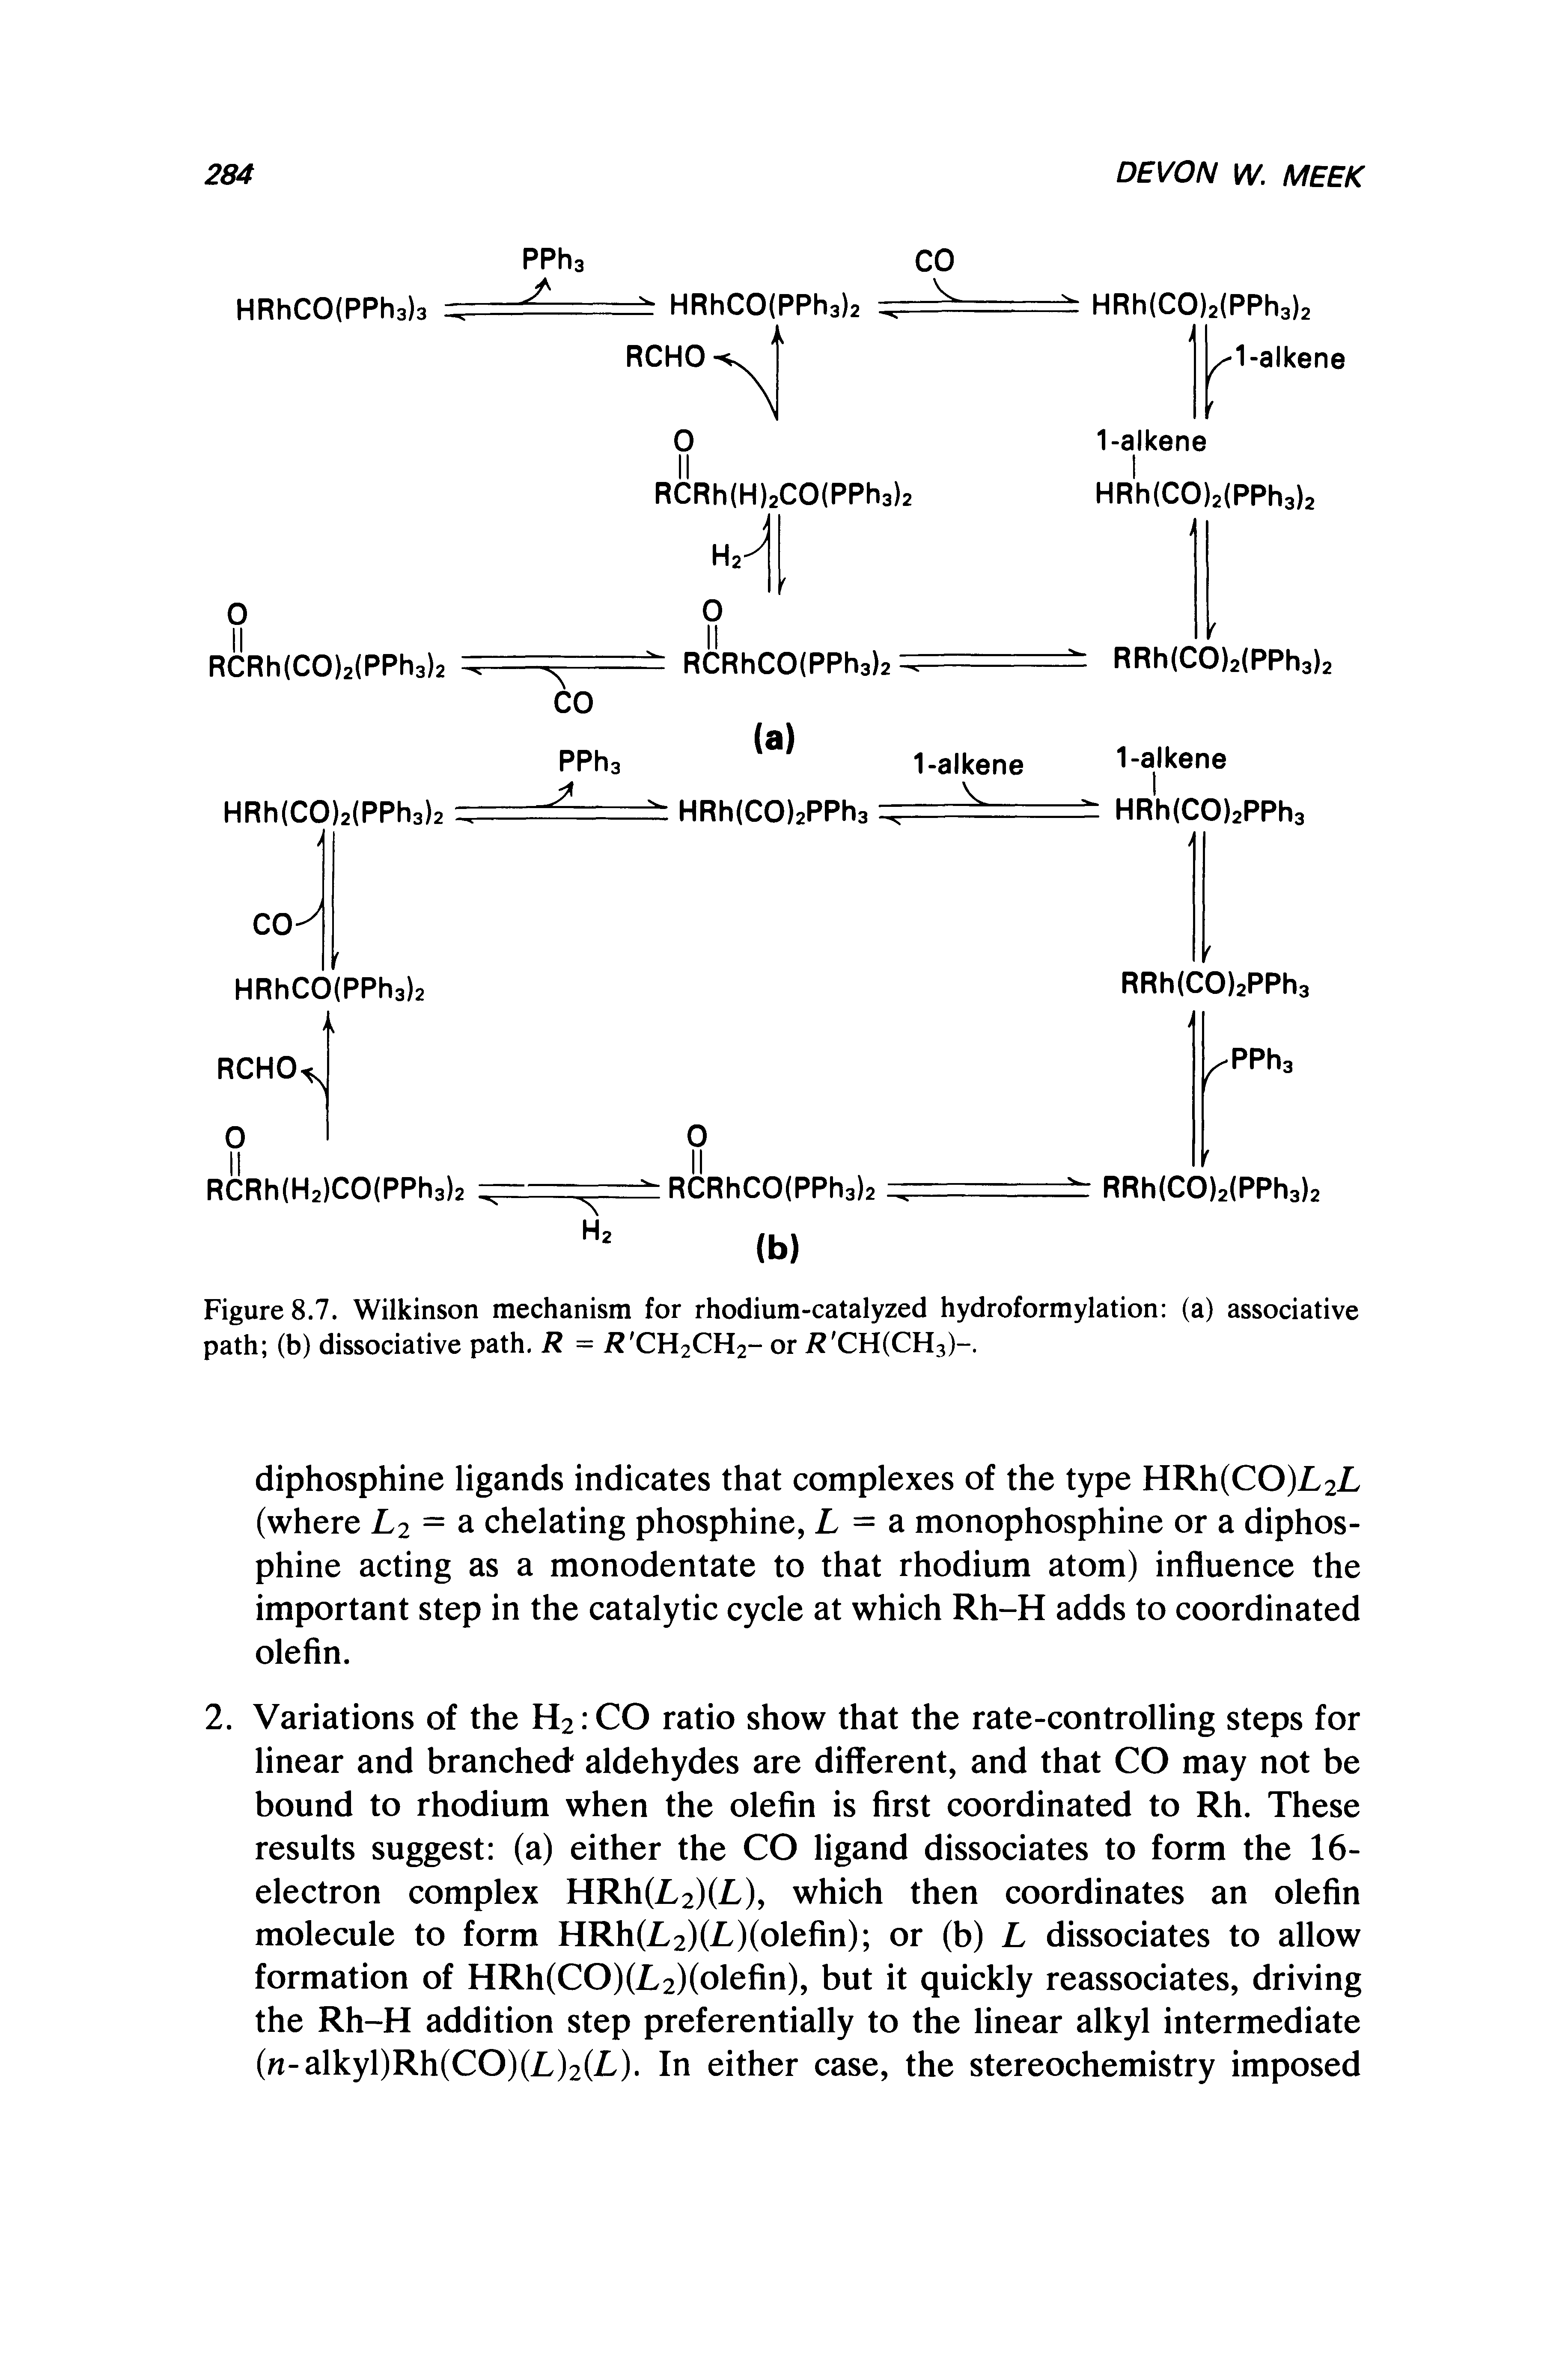 Figures. . Wilkinson mechanism for rhodium-catalyzed hydroformylation (a) associative path (b) dissociative path. R = i CH2CH2- or i CH(CH3)-.